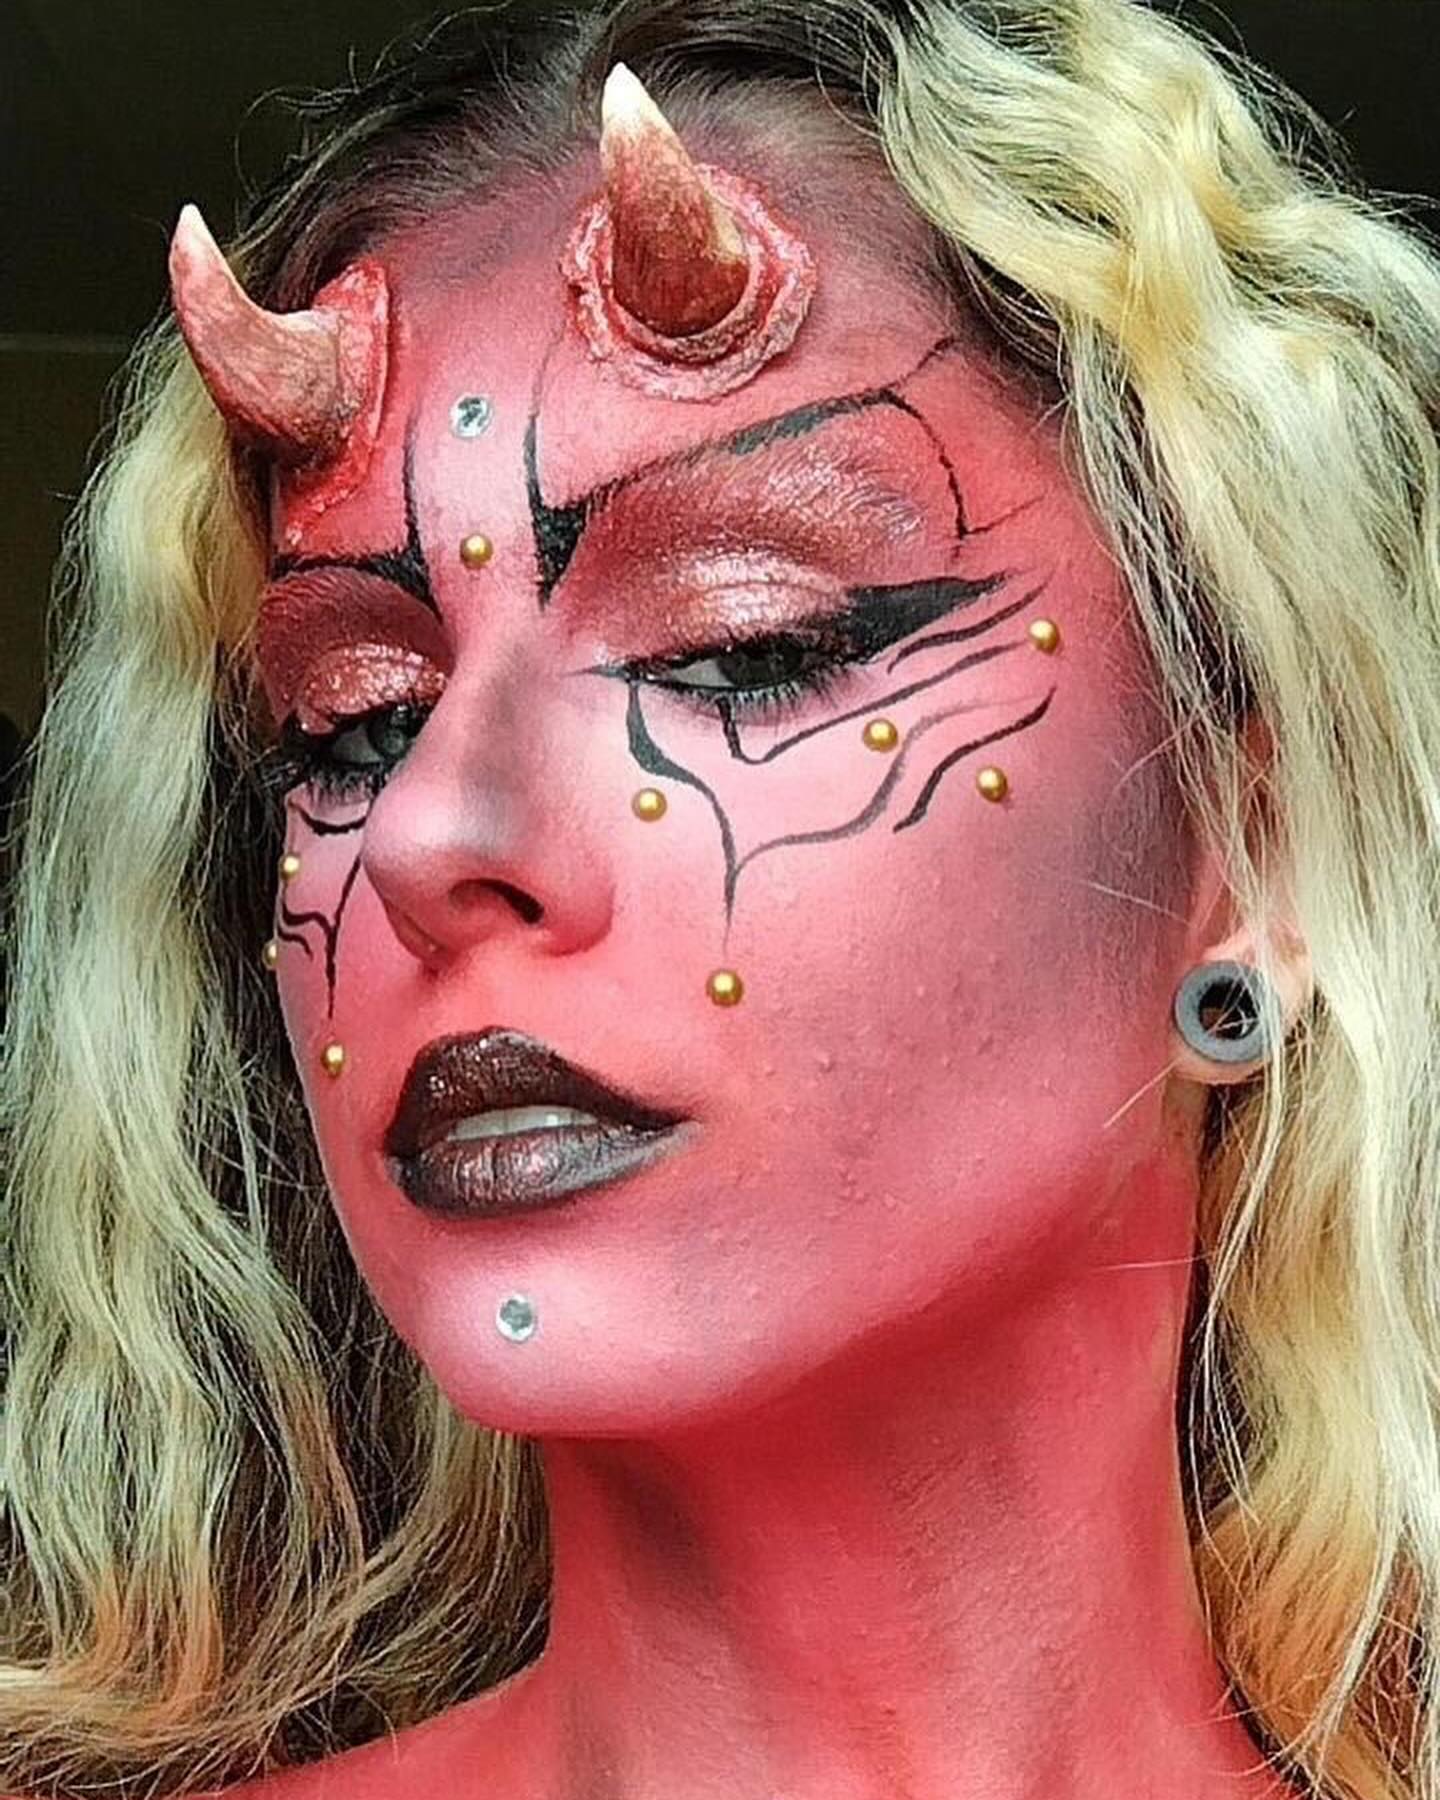 https://www.instagram.com/p/Cy7x9plC3Gp/[SHARP-CAPTION]Team ange 😇 ou team démon 😈 ? 
Nous, on a déjà choisi 😏

#makeup #makeuphalloween #halloween #demon #ange #angeoudemon #makeupinspiration #devil #devilmakeup